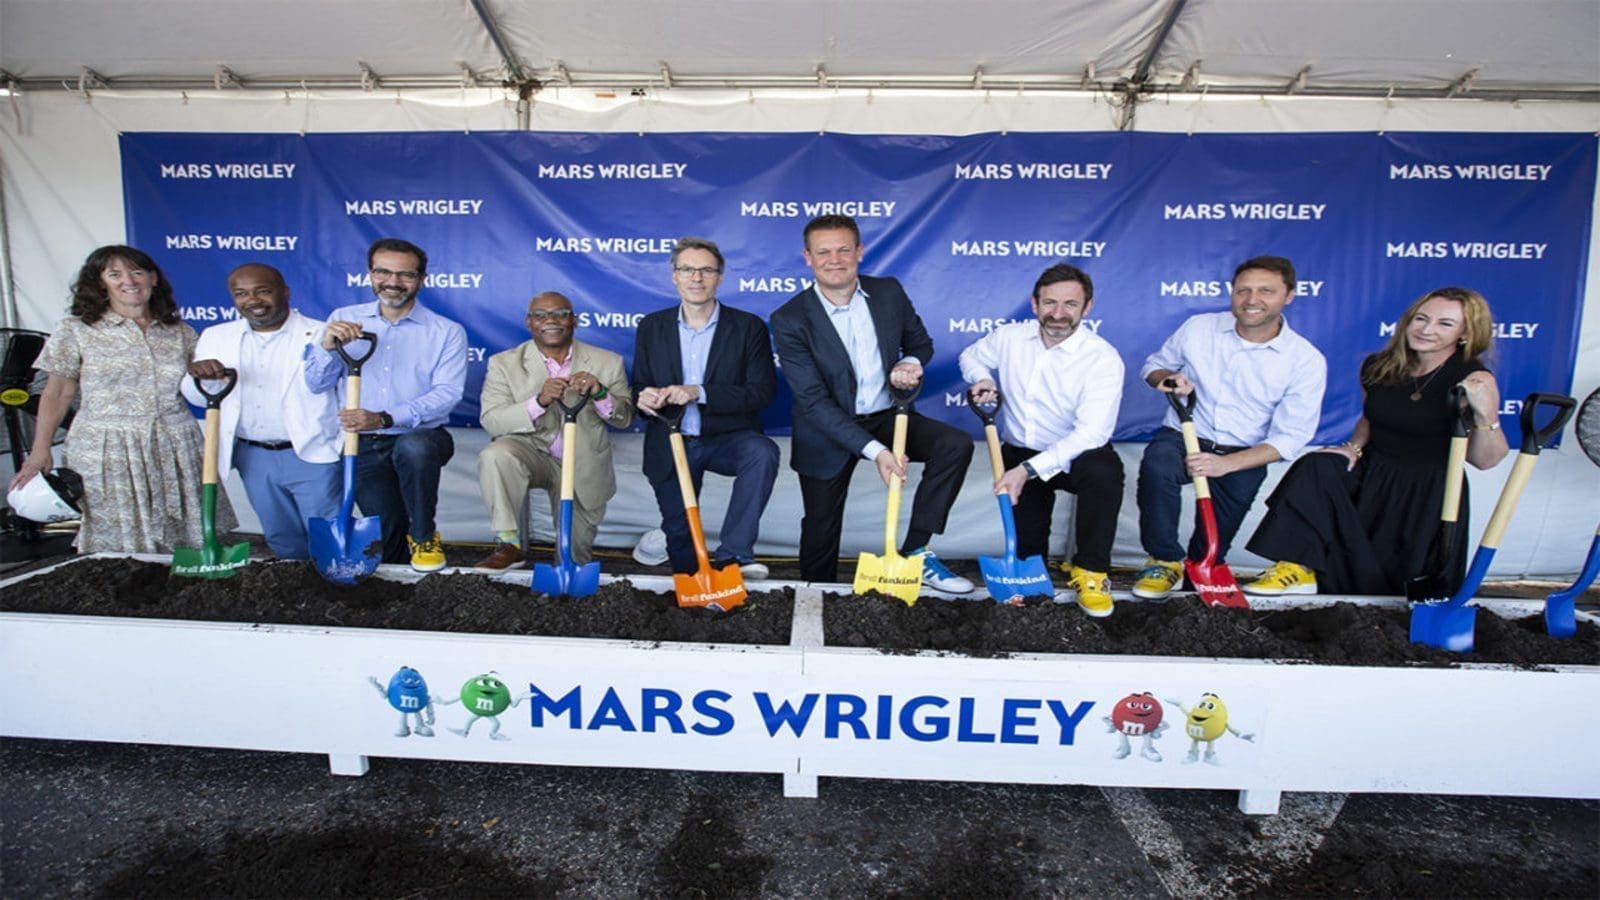 Mars Wrigley breaks ground on new global R&D hub as CEO Grant Reid retires